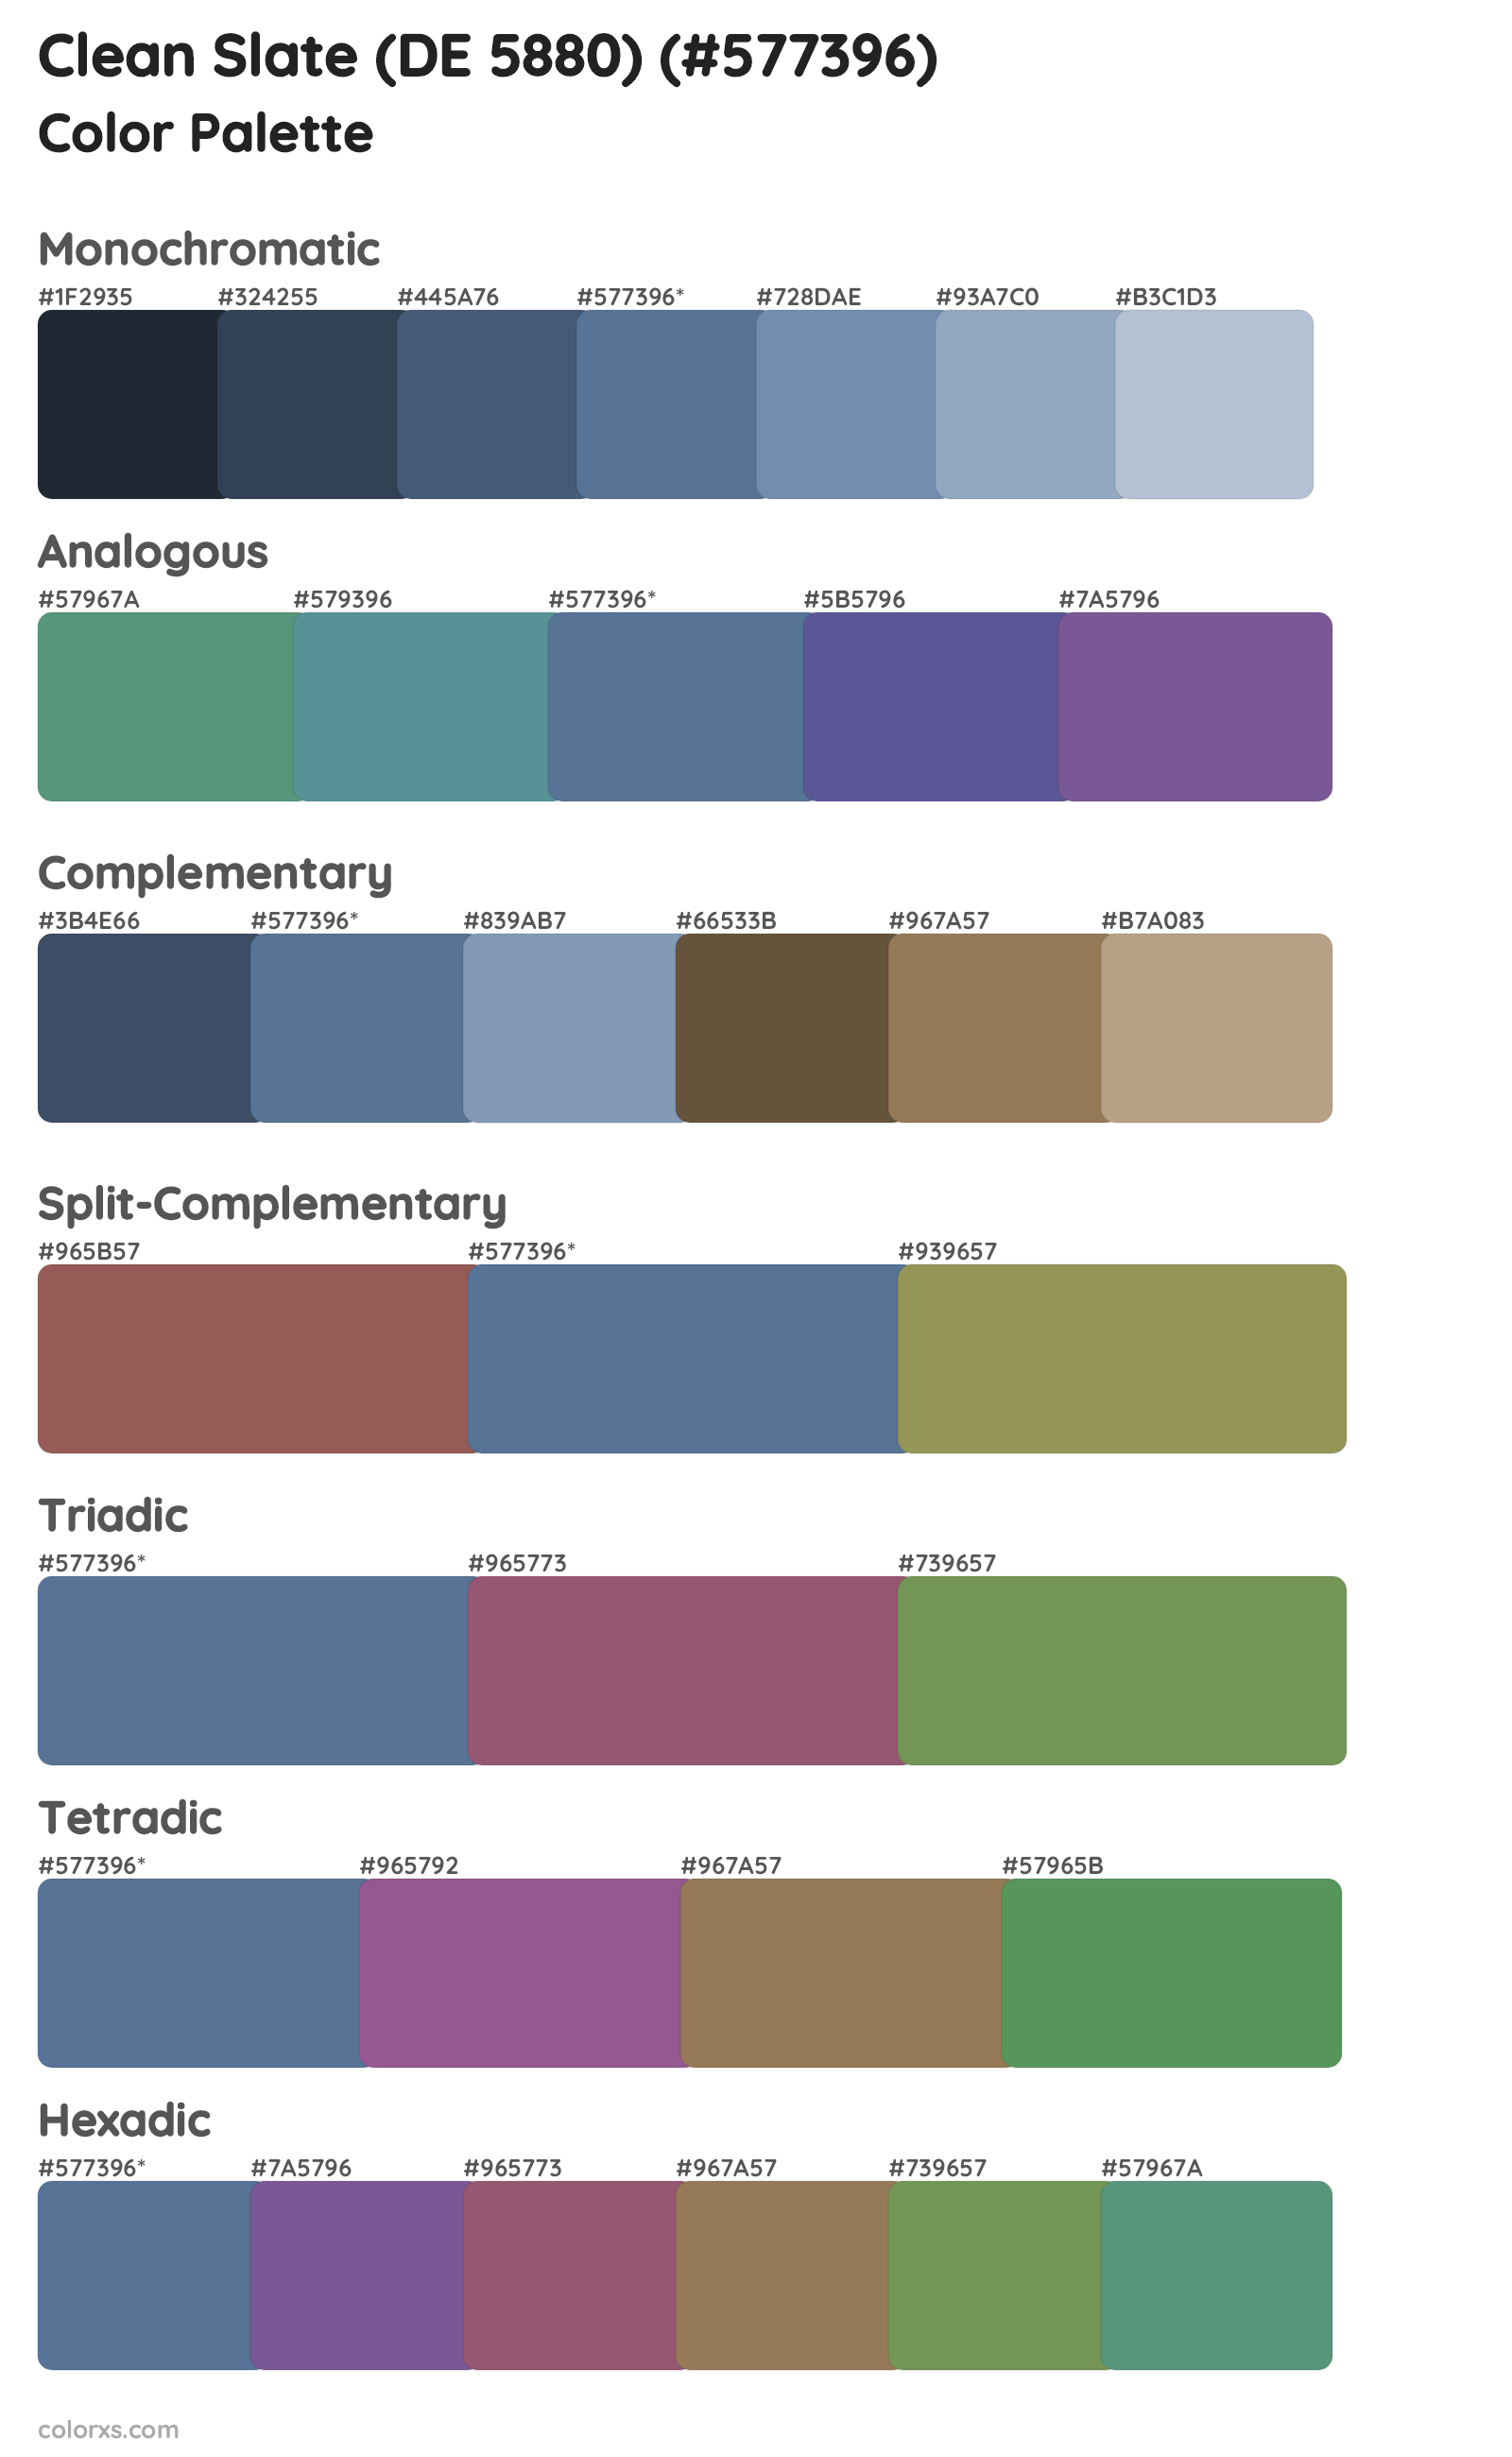 Clean Slate (DE 5880) Color Scheme Palettes